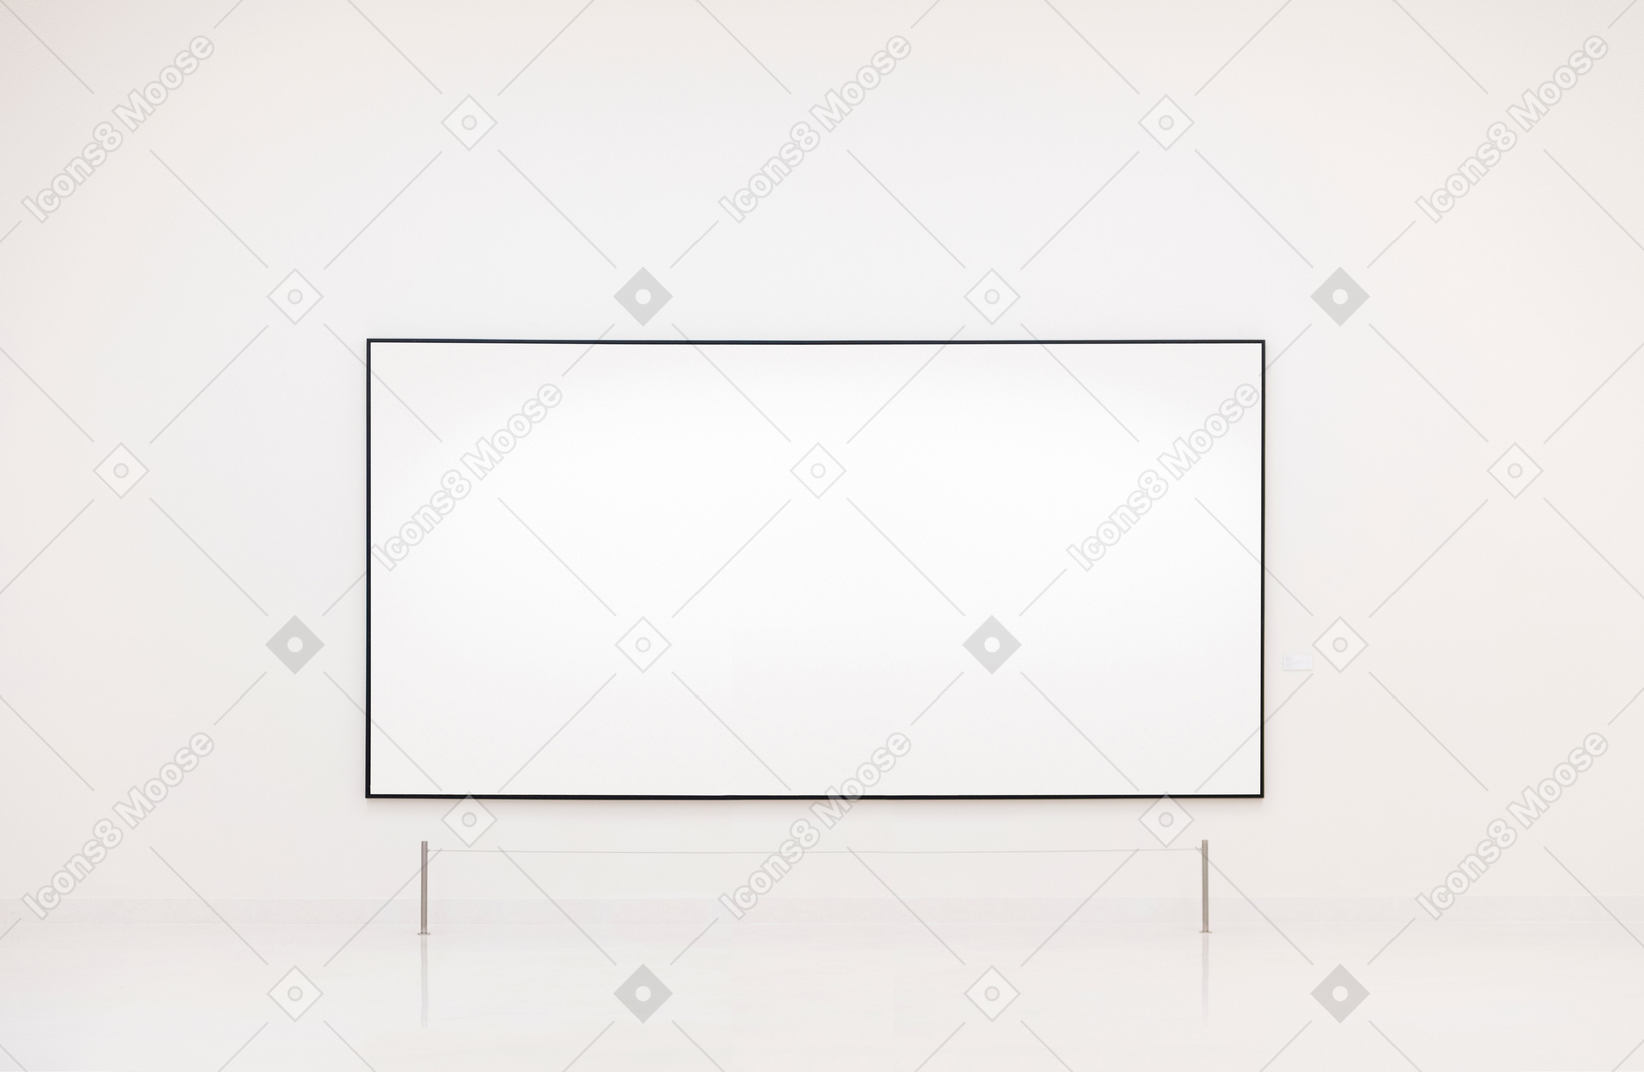 Hintergrund des whiteboards auf weiße wand